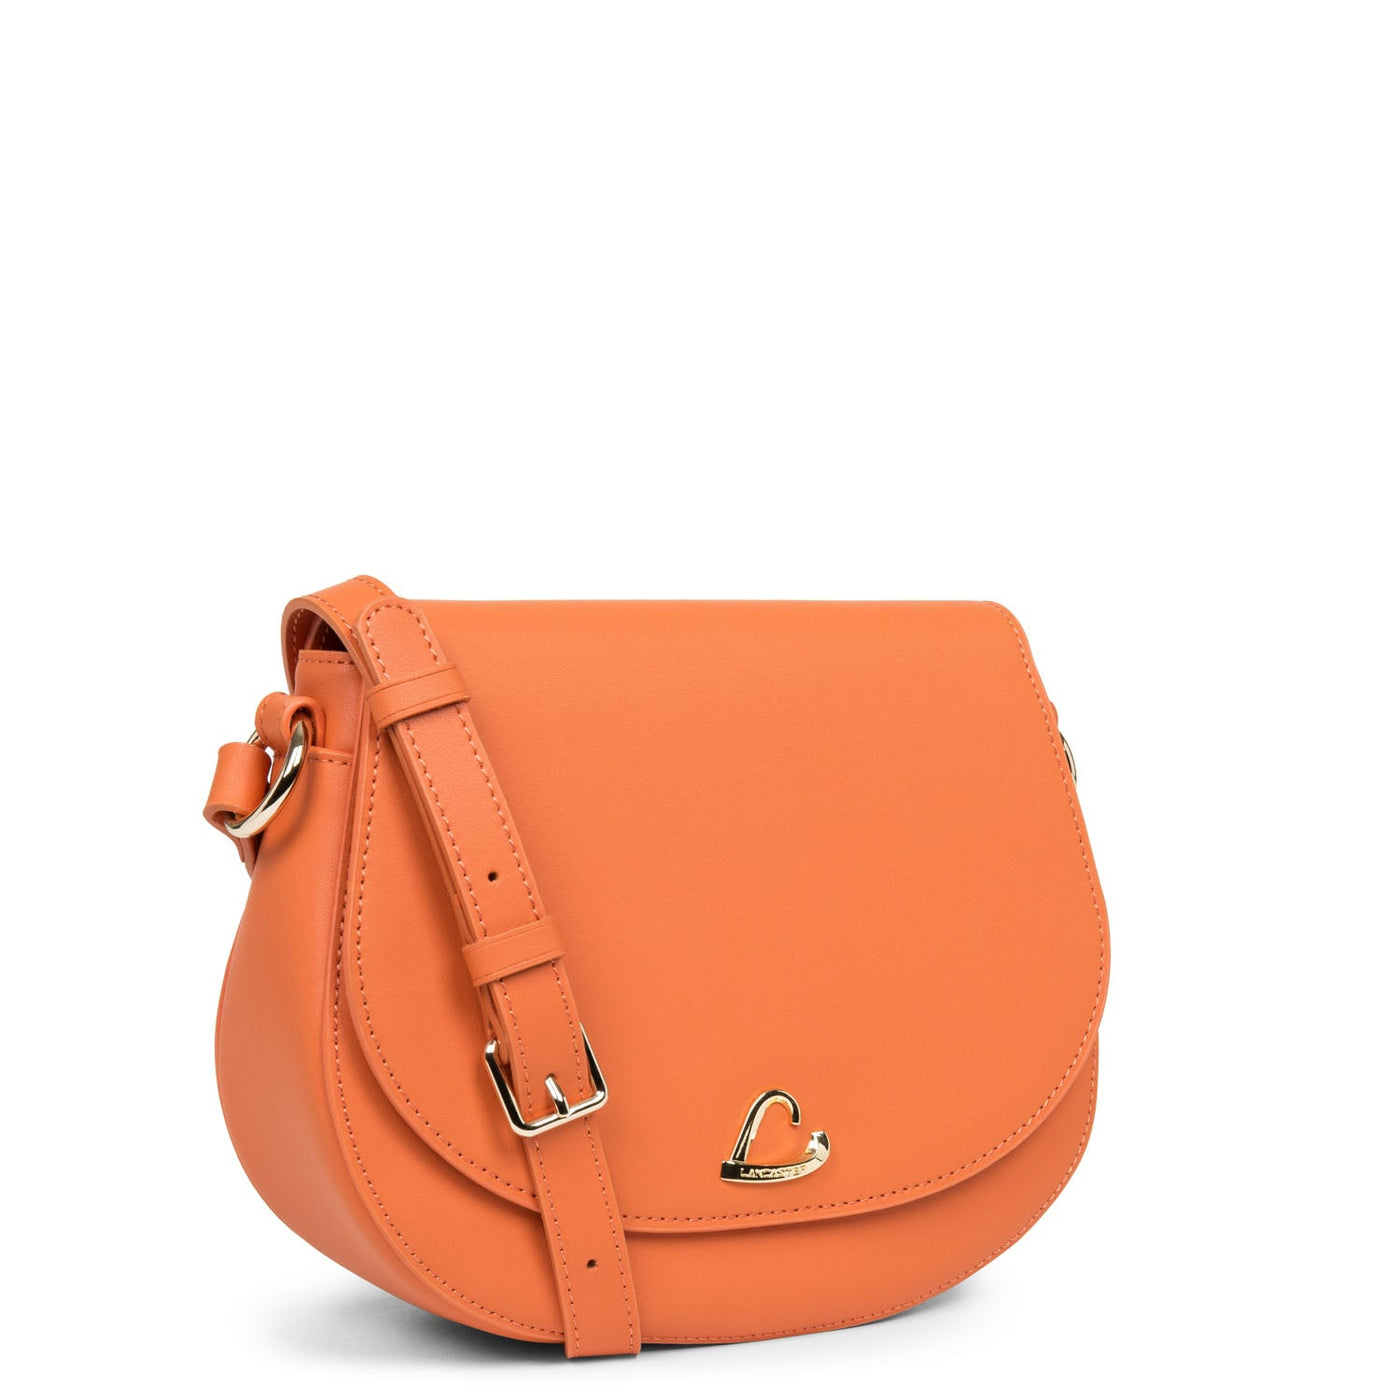 m crossbody bag - city philos #couleur_orange